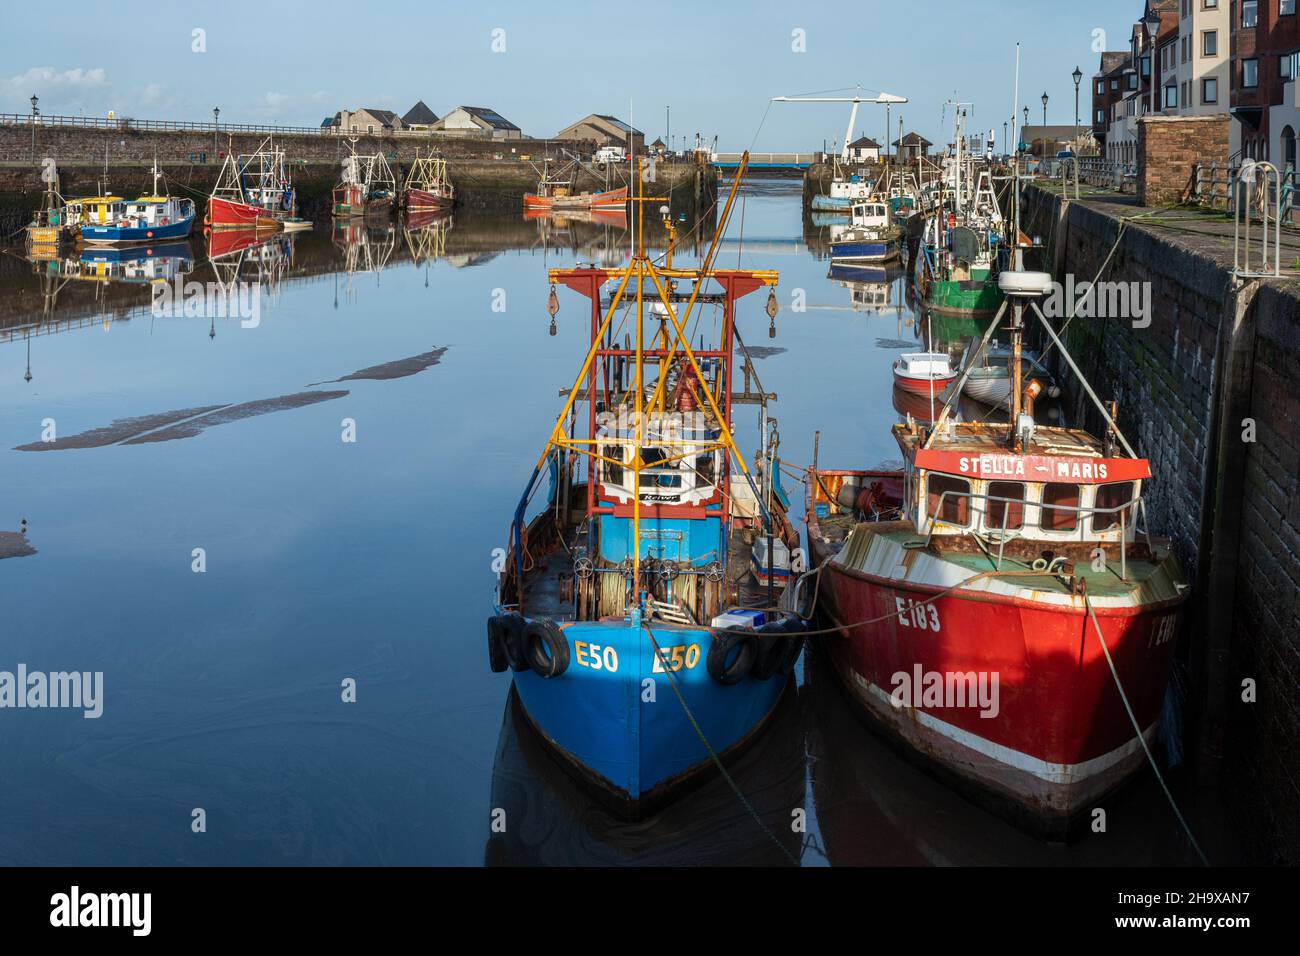 Bateaux de pêche colorés dans le port de Maryport, une jolie ville côtière de Cumbria, Angleterre, Royaume-Uni Banque D'Images